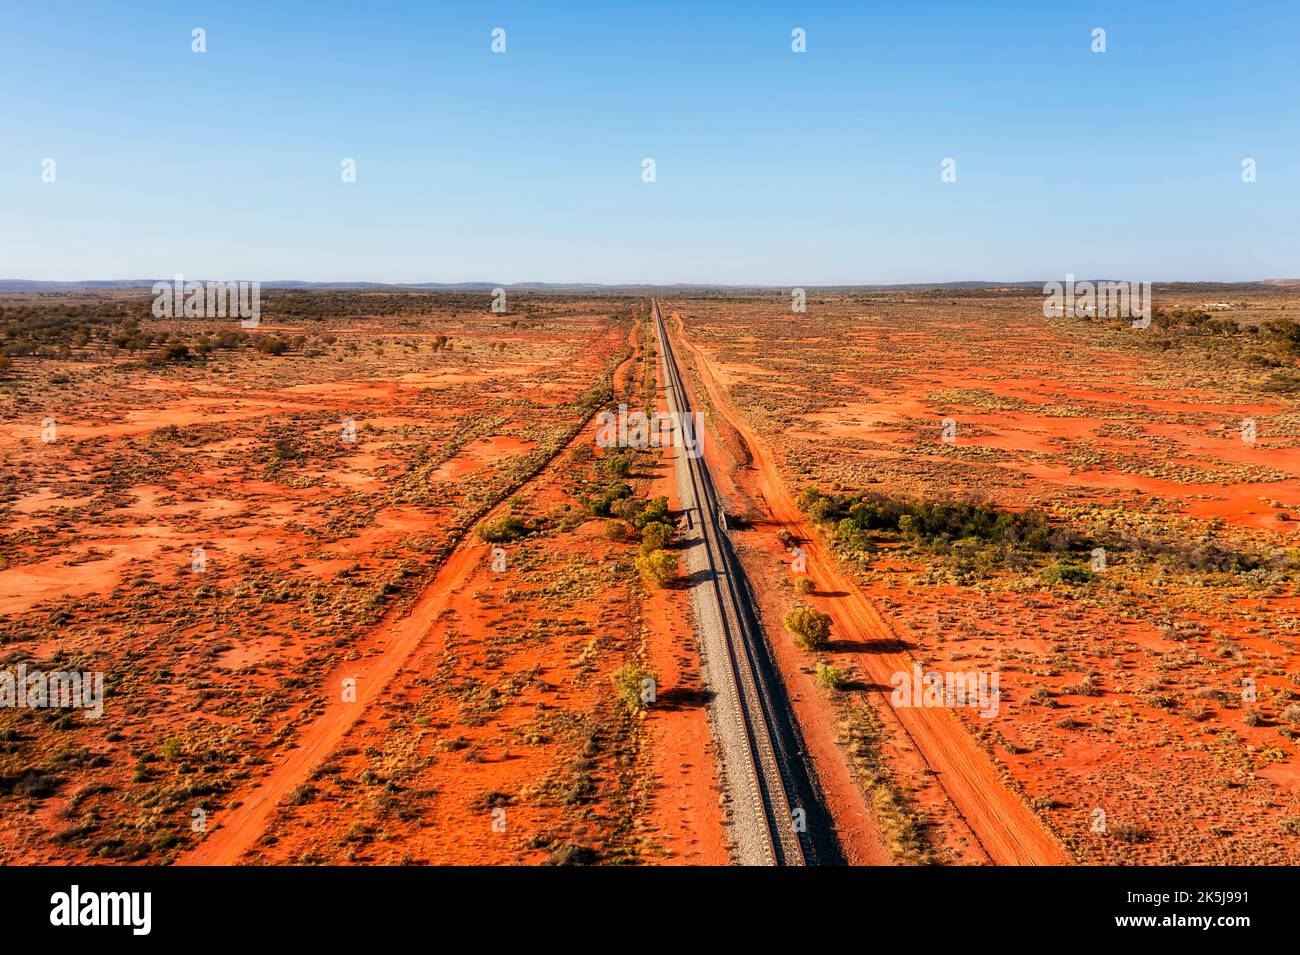 Entferntes australisches Outback mit roter Erde und einer einzigen Eisenbahnlinie zur Stadt Broken Hill - Luftaufnahme der Landschaft. Stockfoto